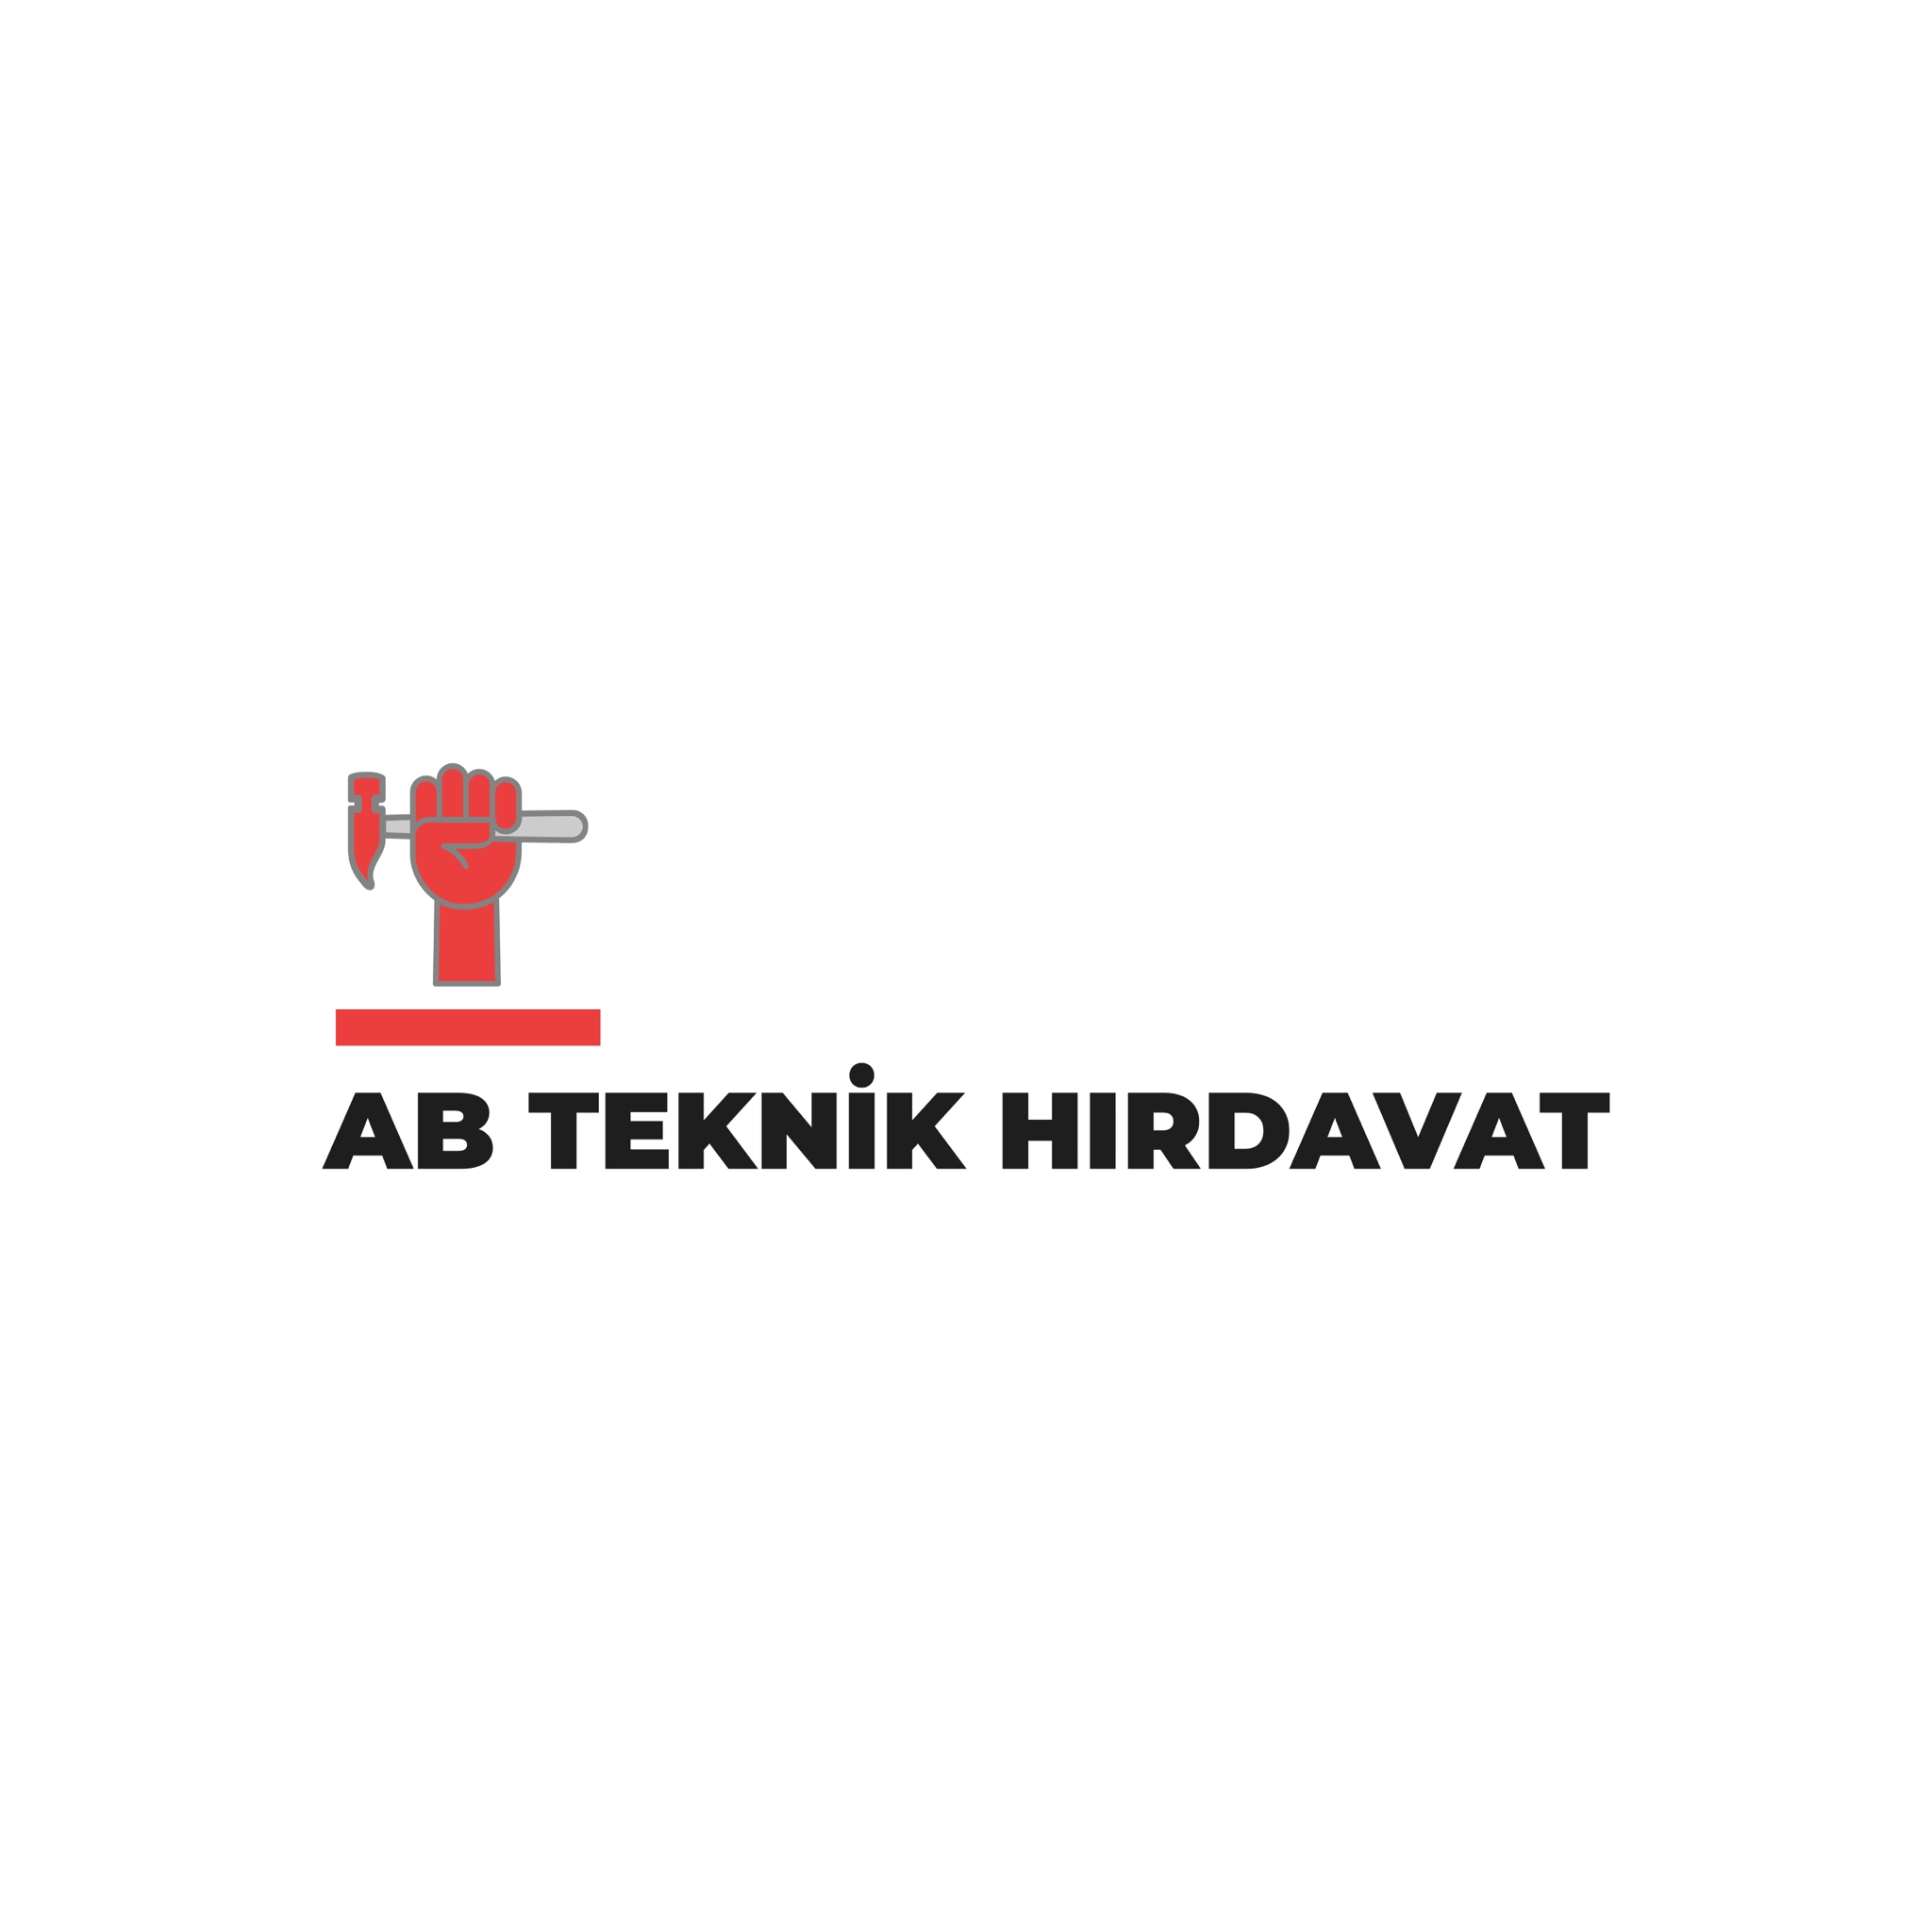 Beyoğlu Teknik Hırdavat Malzemeleri Satışı & Ab Teknik Hırdavat